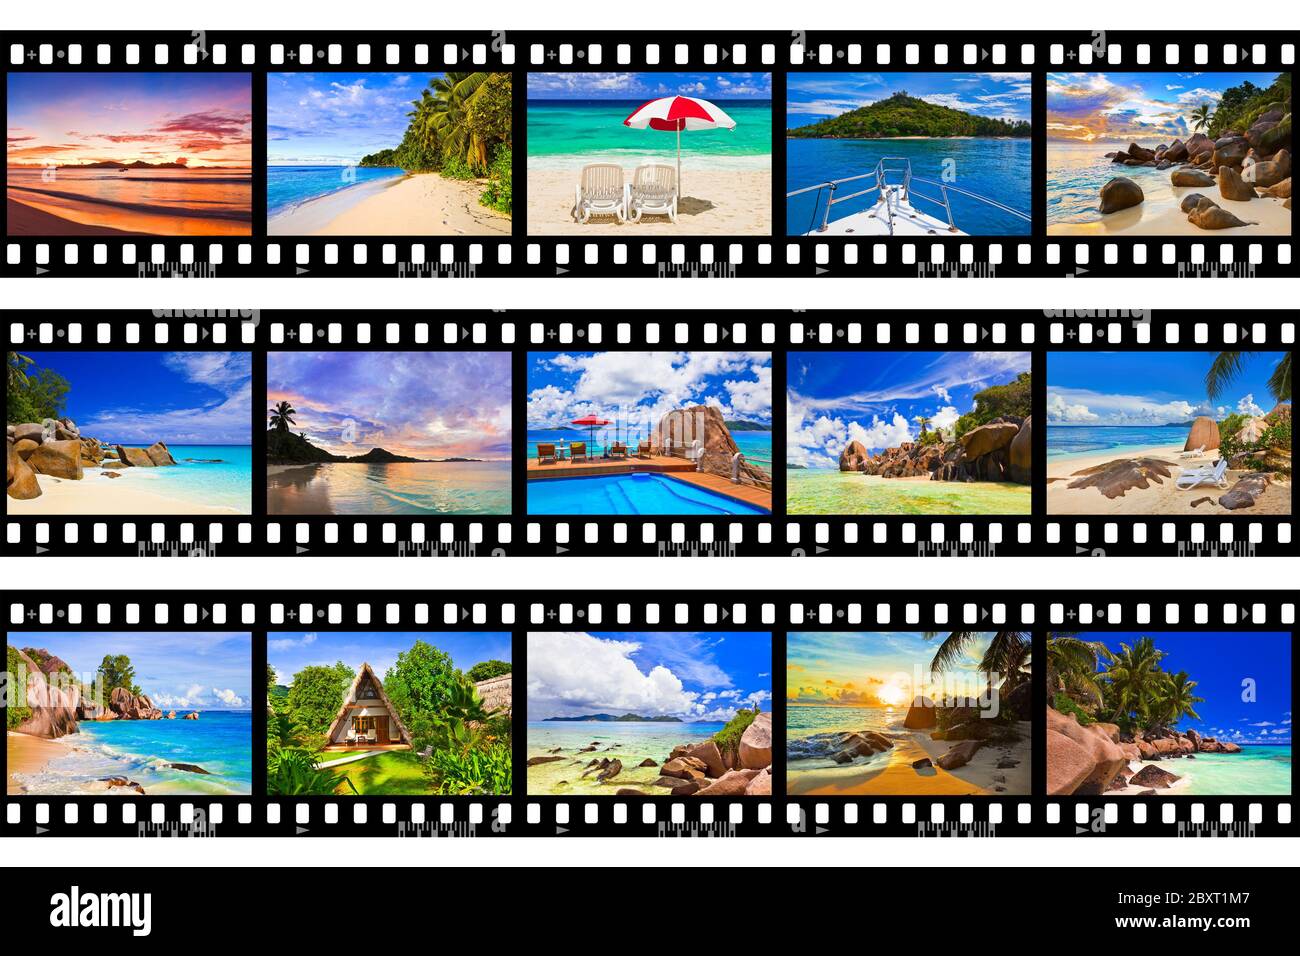 Rahmen des Films - Natur und Reise (meine Fotos) Stockfoto